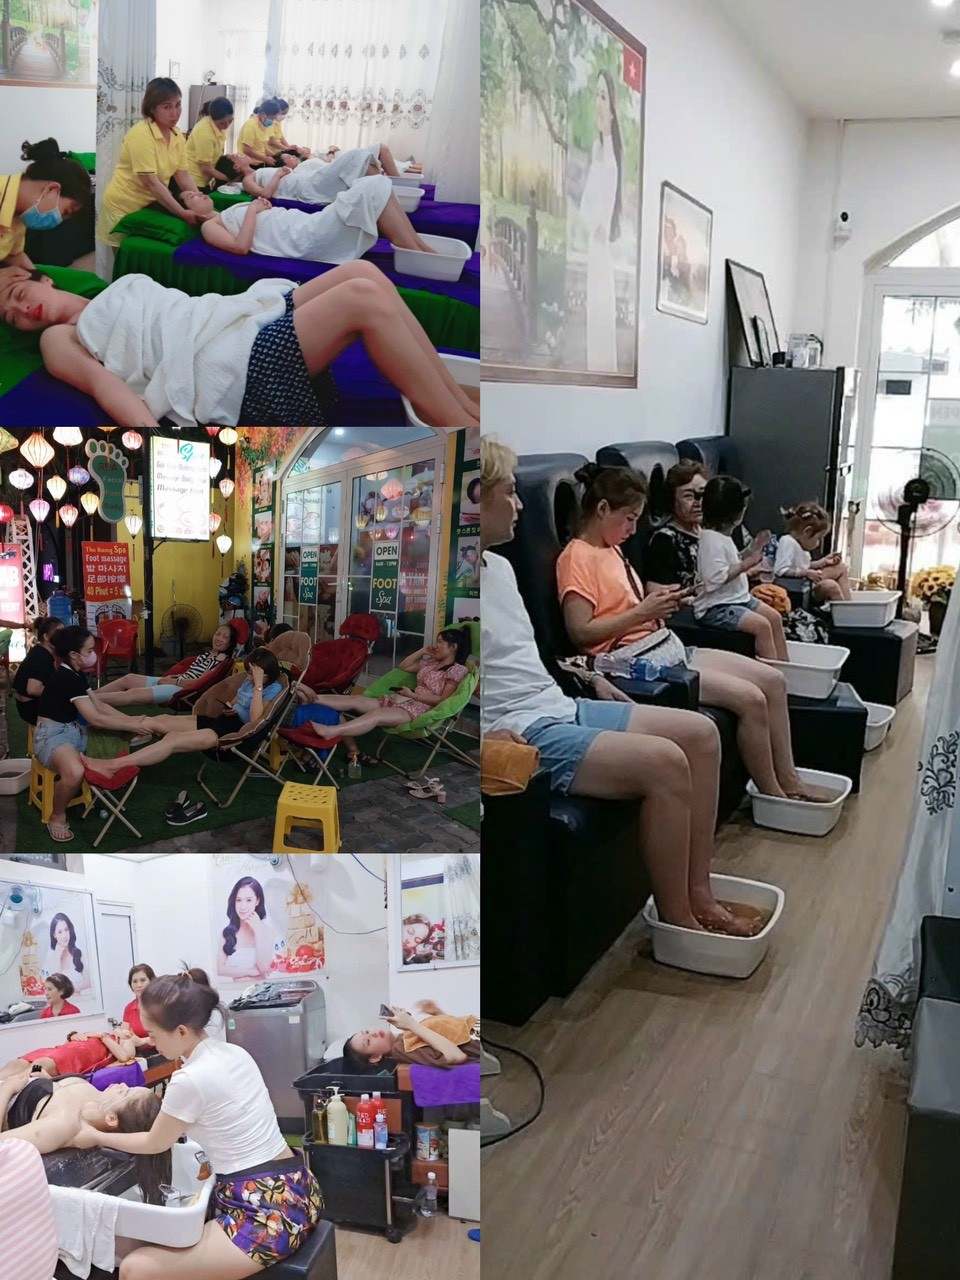 địa điểm spa massage Đà Nẵng